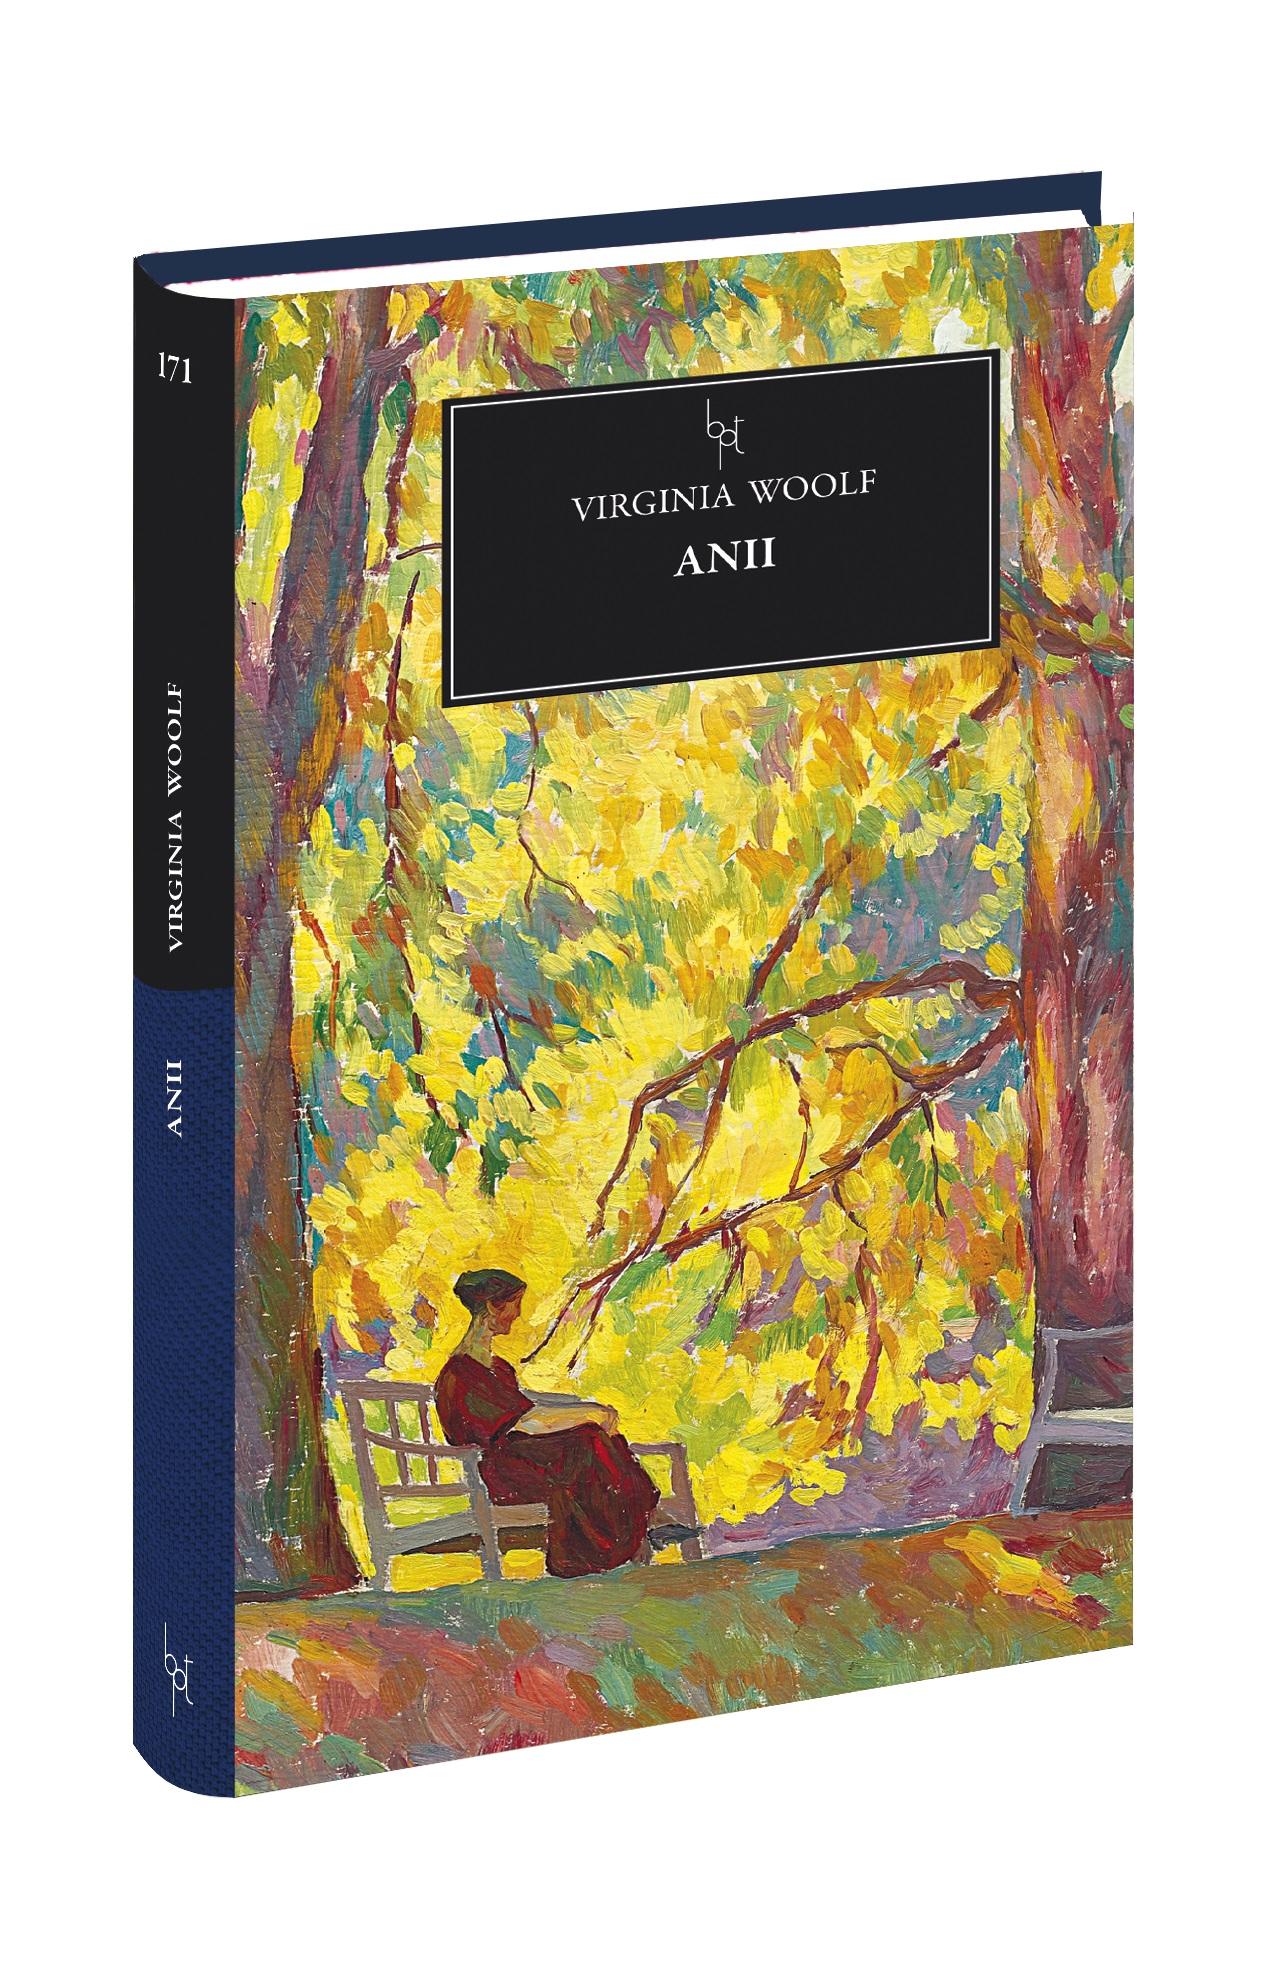 "Anii", de Virginia Woolf, volumul 171 din Biblioteca pentru Toţi